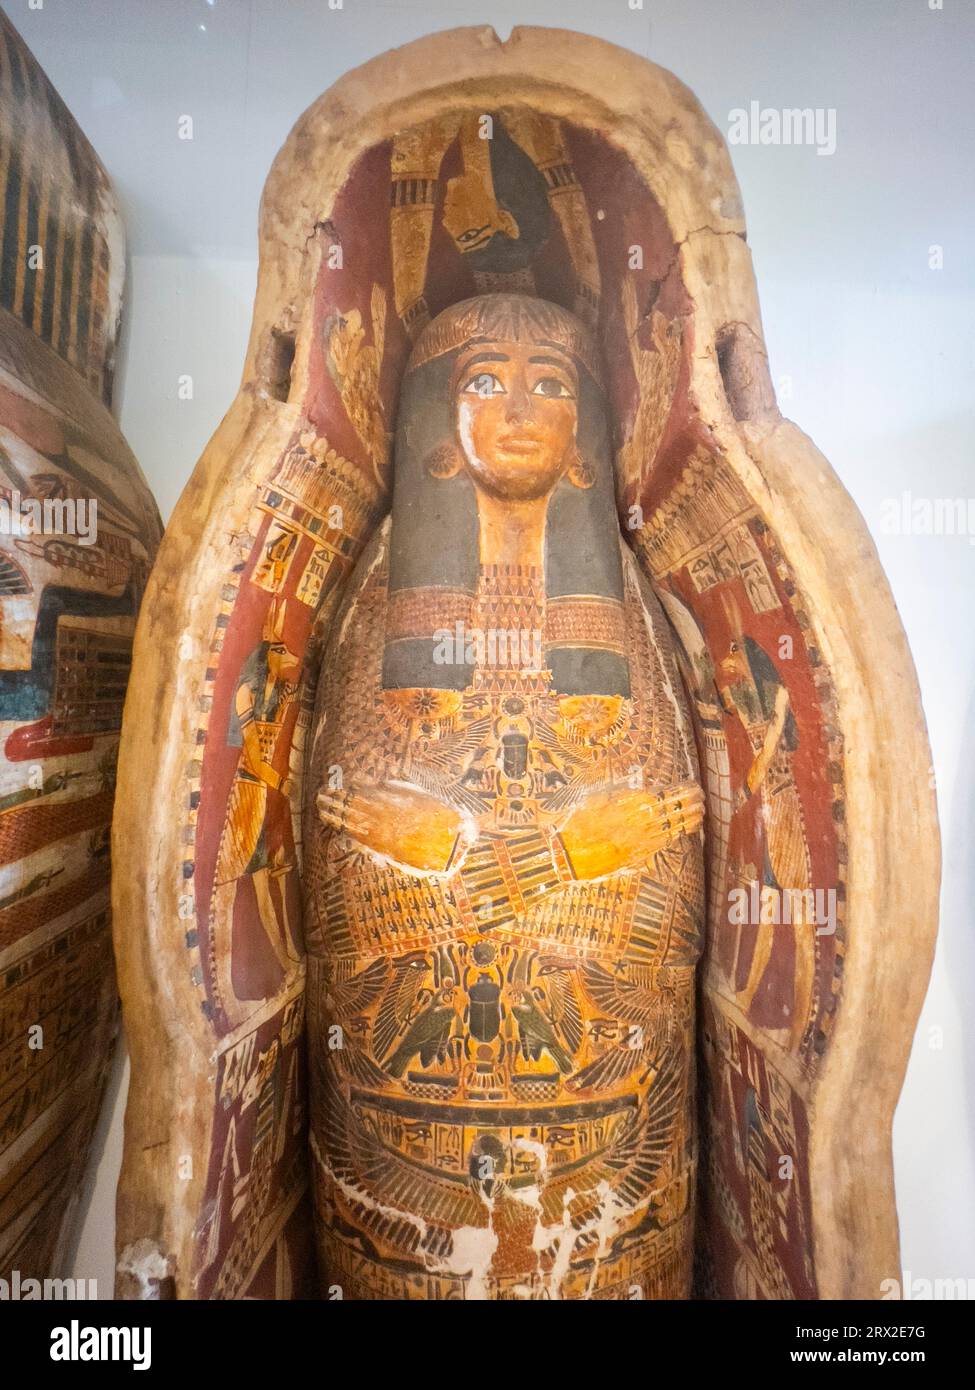 Vue des restes d'un ancien sarcophage égyptien exposé au Musée égyptien, le Caire, Egypte, Afrique du Nord, Afrique Banque D'Images